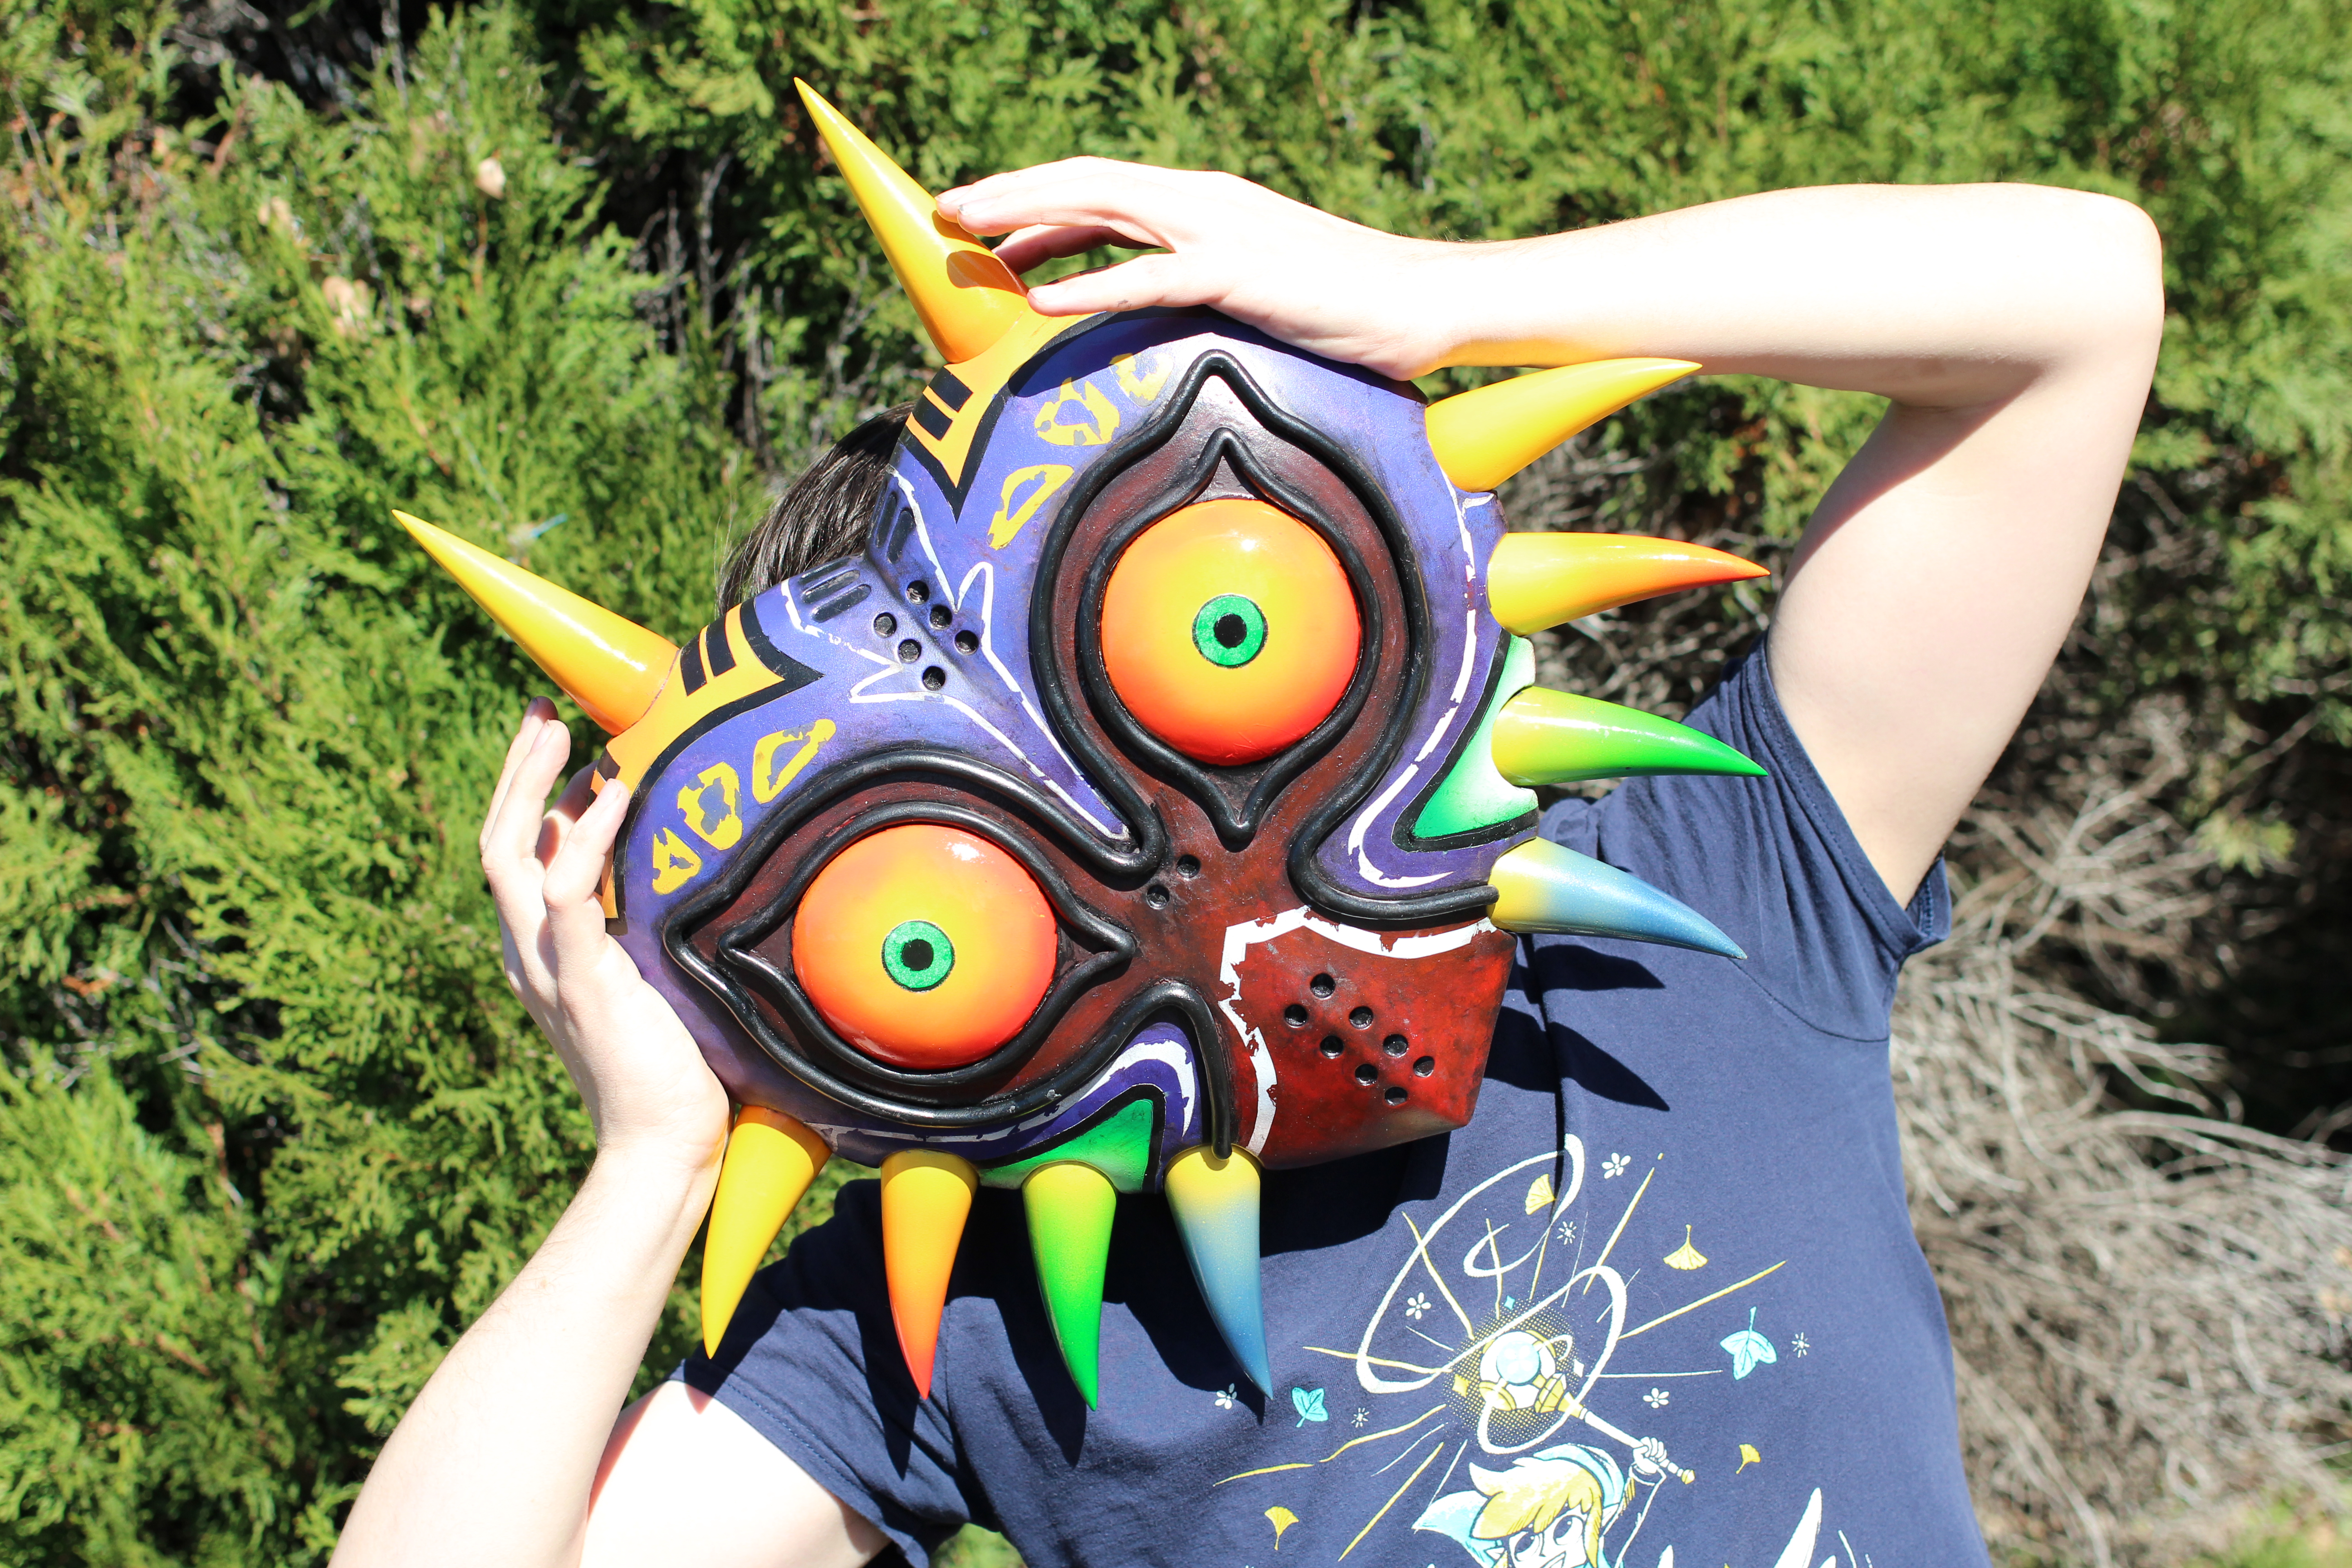 The Legend of Zelda: Majora's Mask (Wearable/Prop)